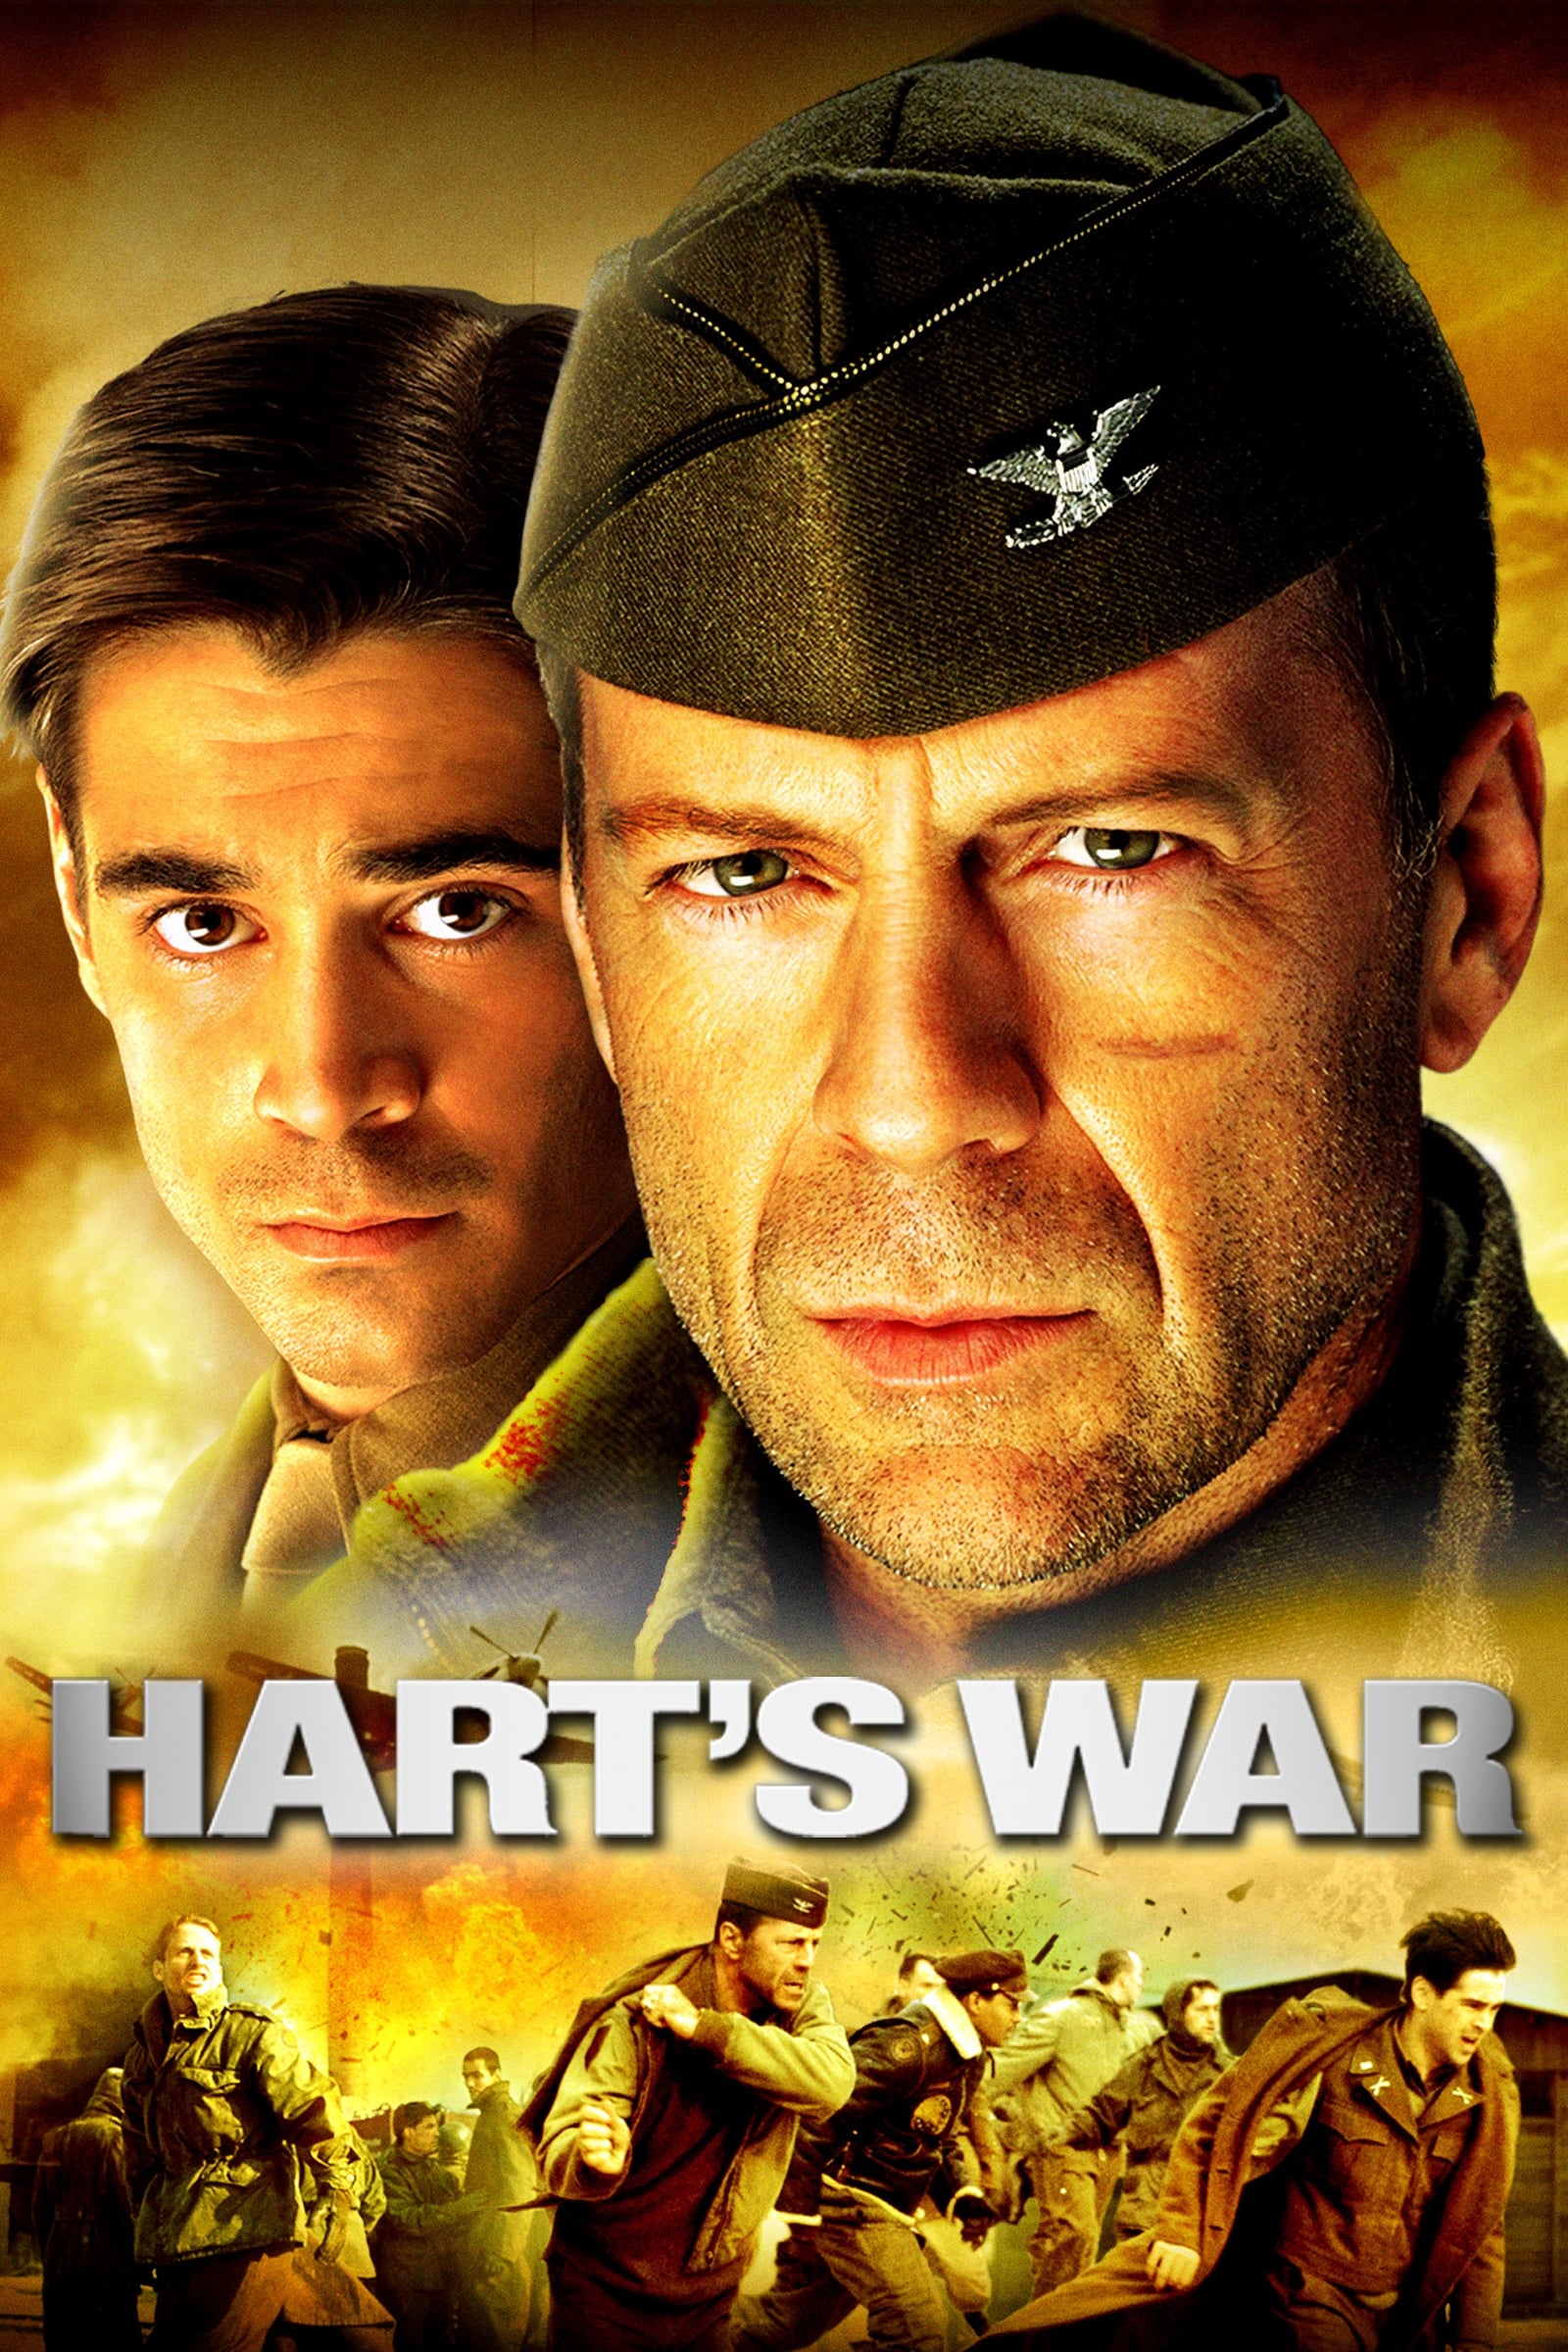 La guerra de Hart